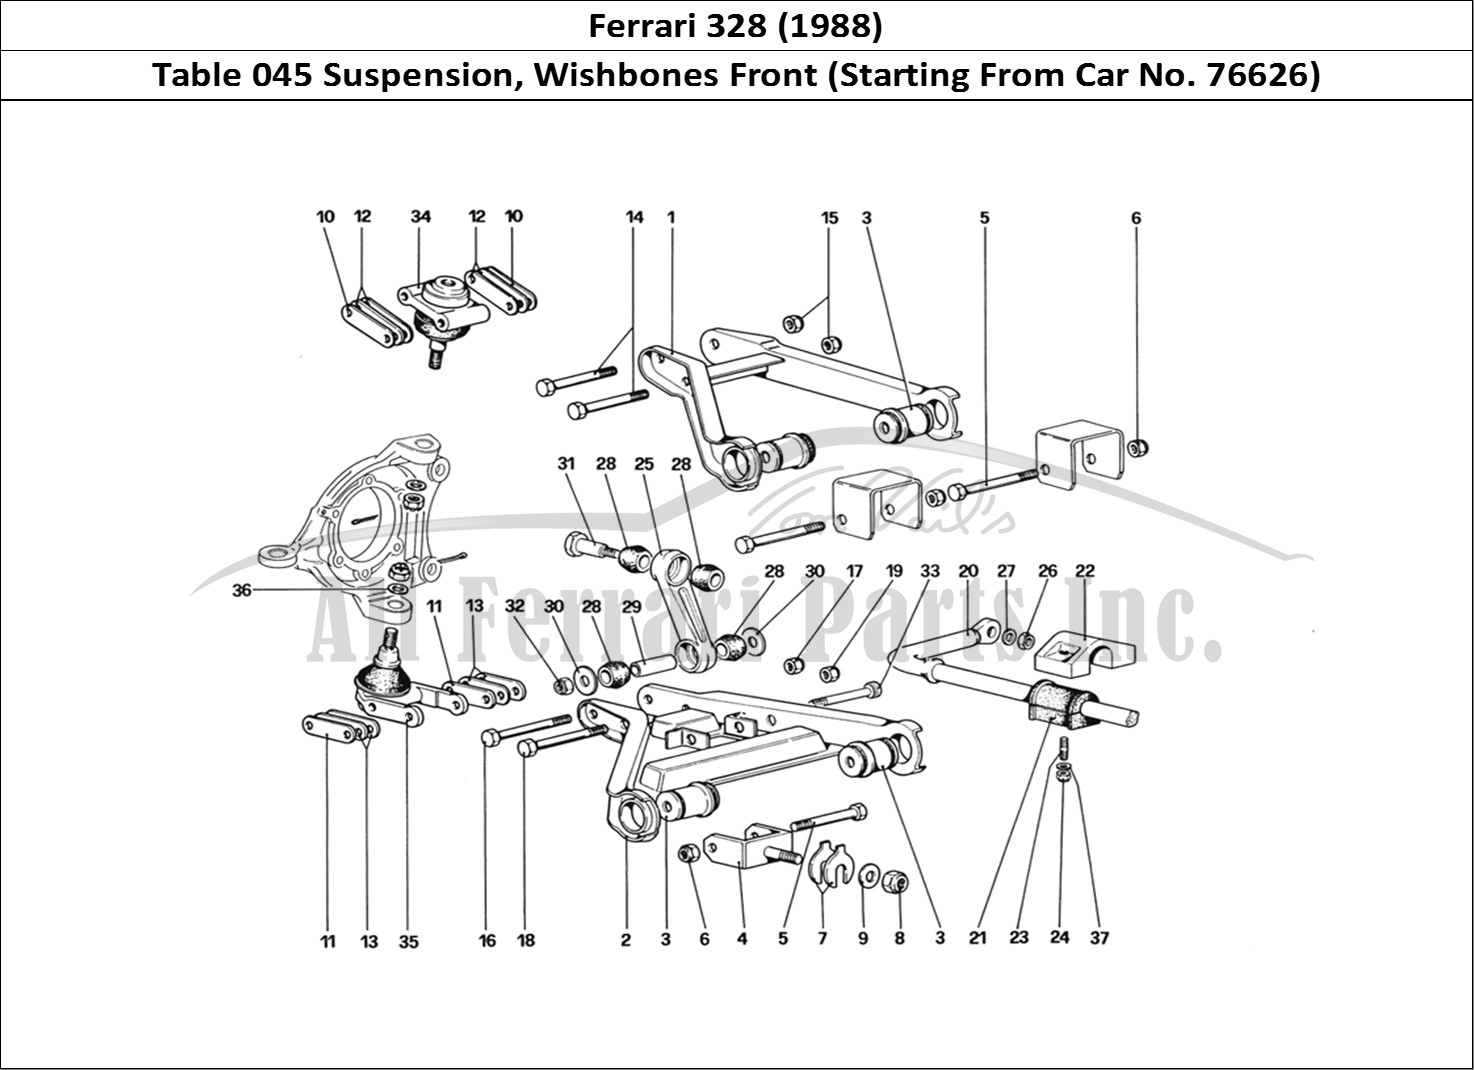 Ferrari Parts Ferrari 328 (1988) Page 045 Front Suspension - Wishbo